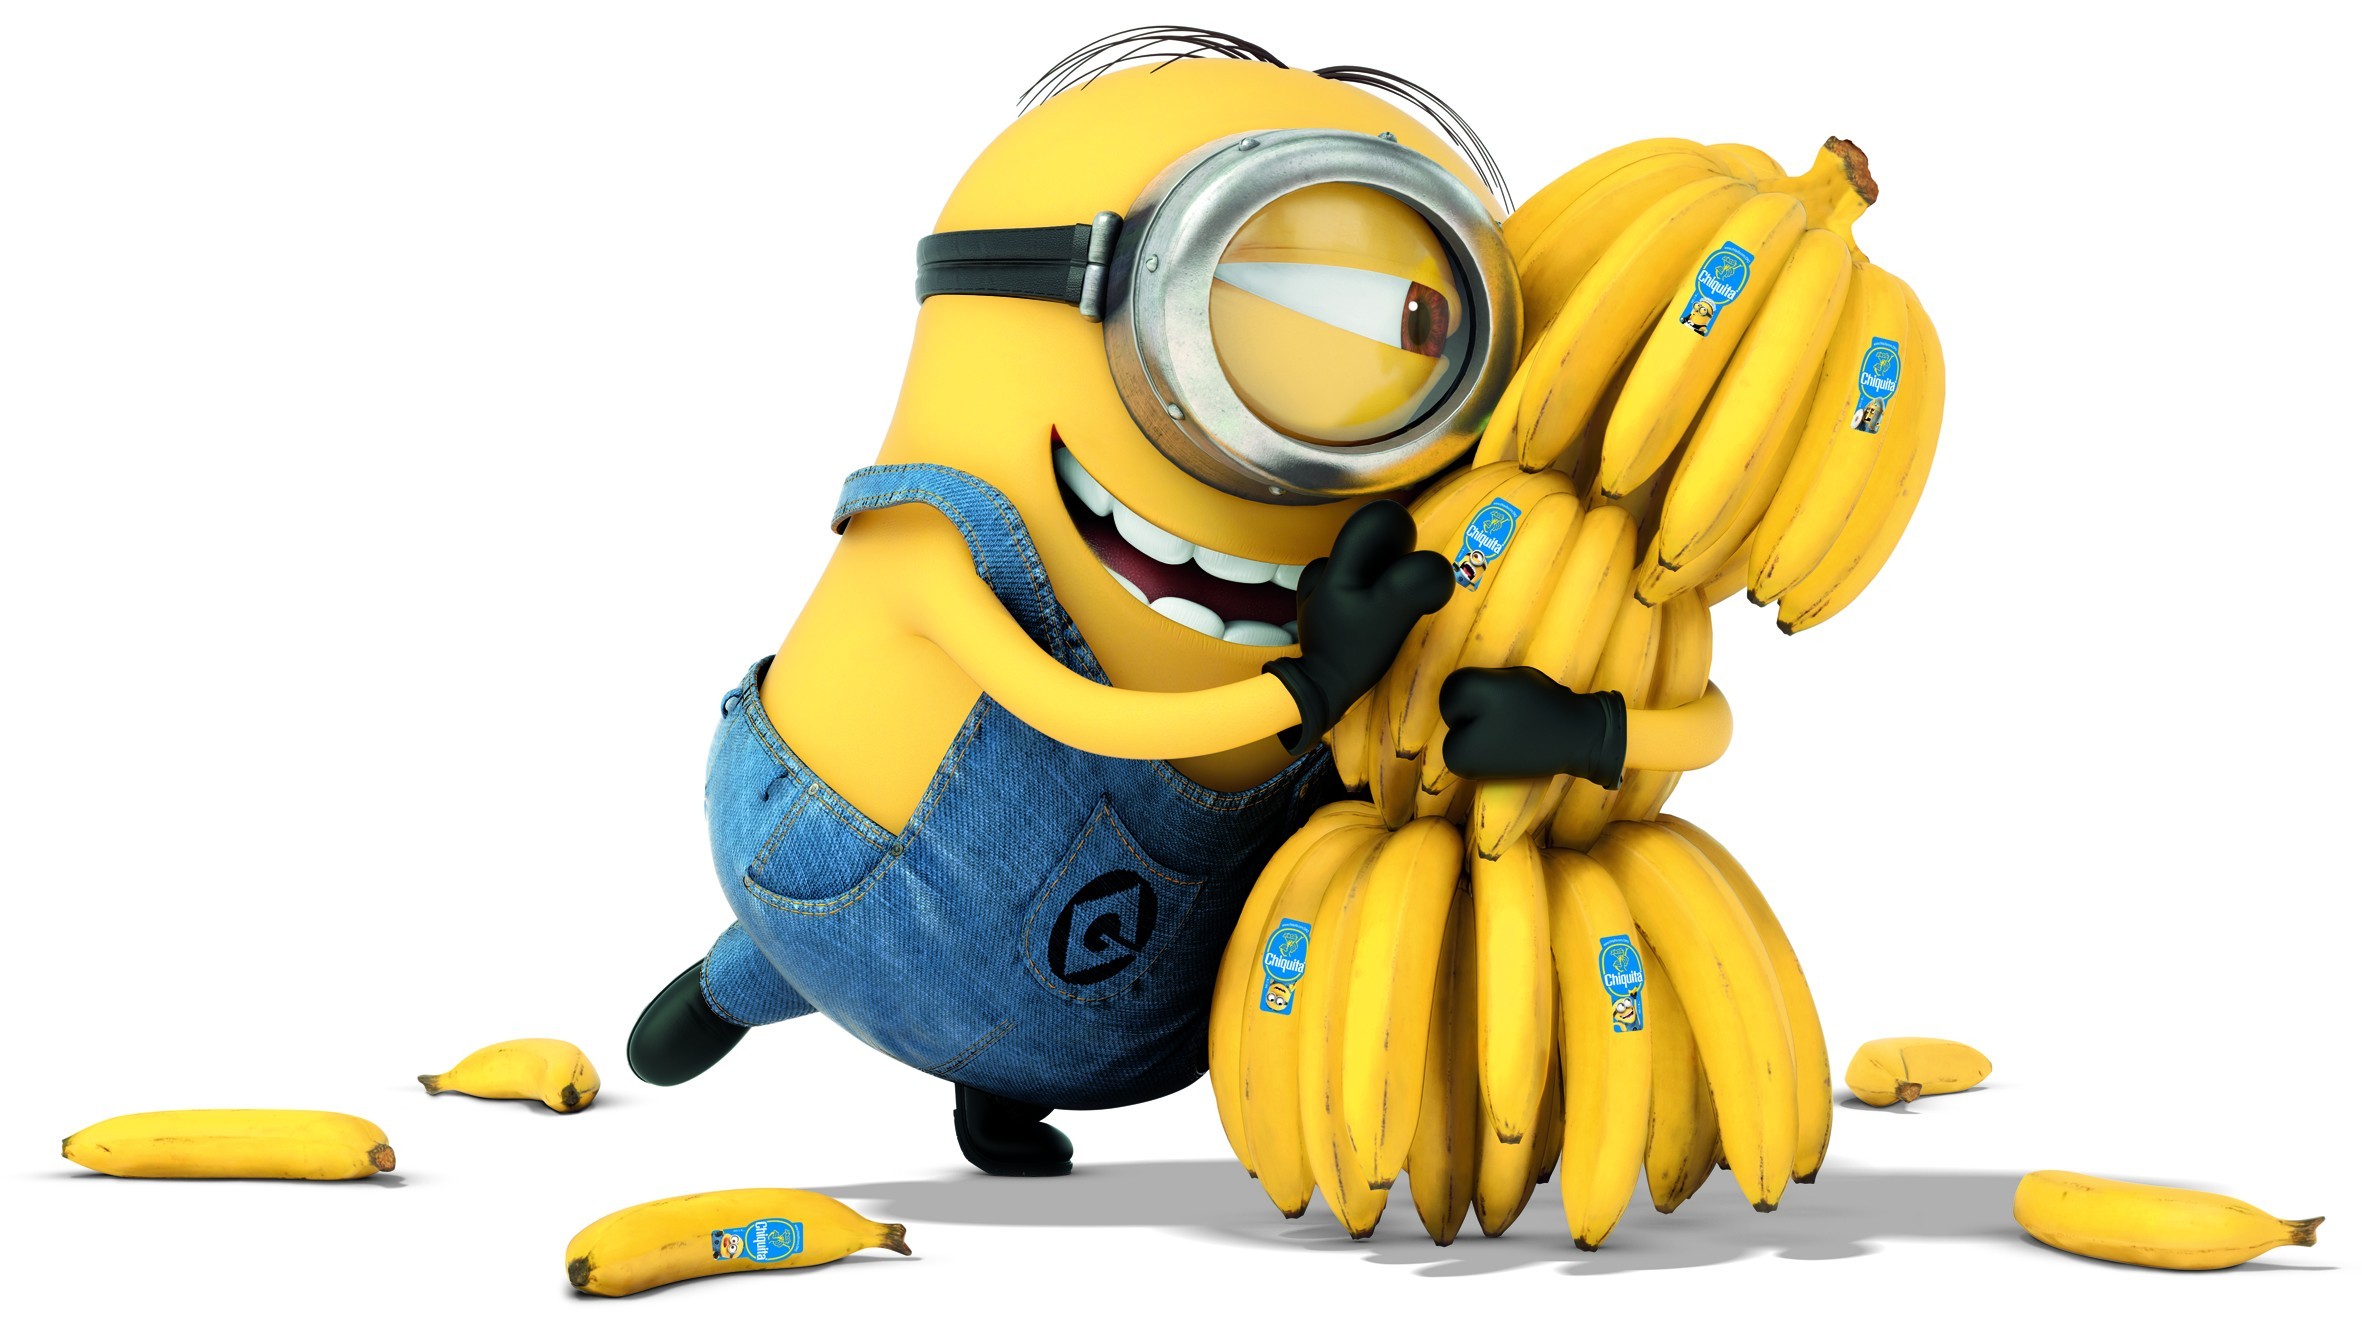 Mężczyzna może publicznie jeść banana nie wzbudzając głupich skojarzeń